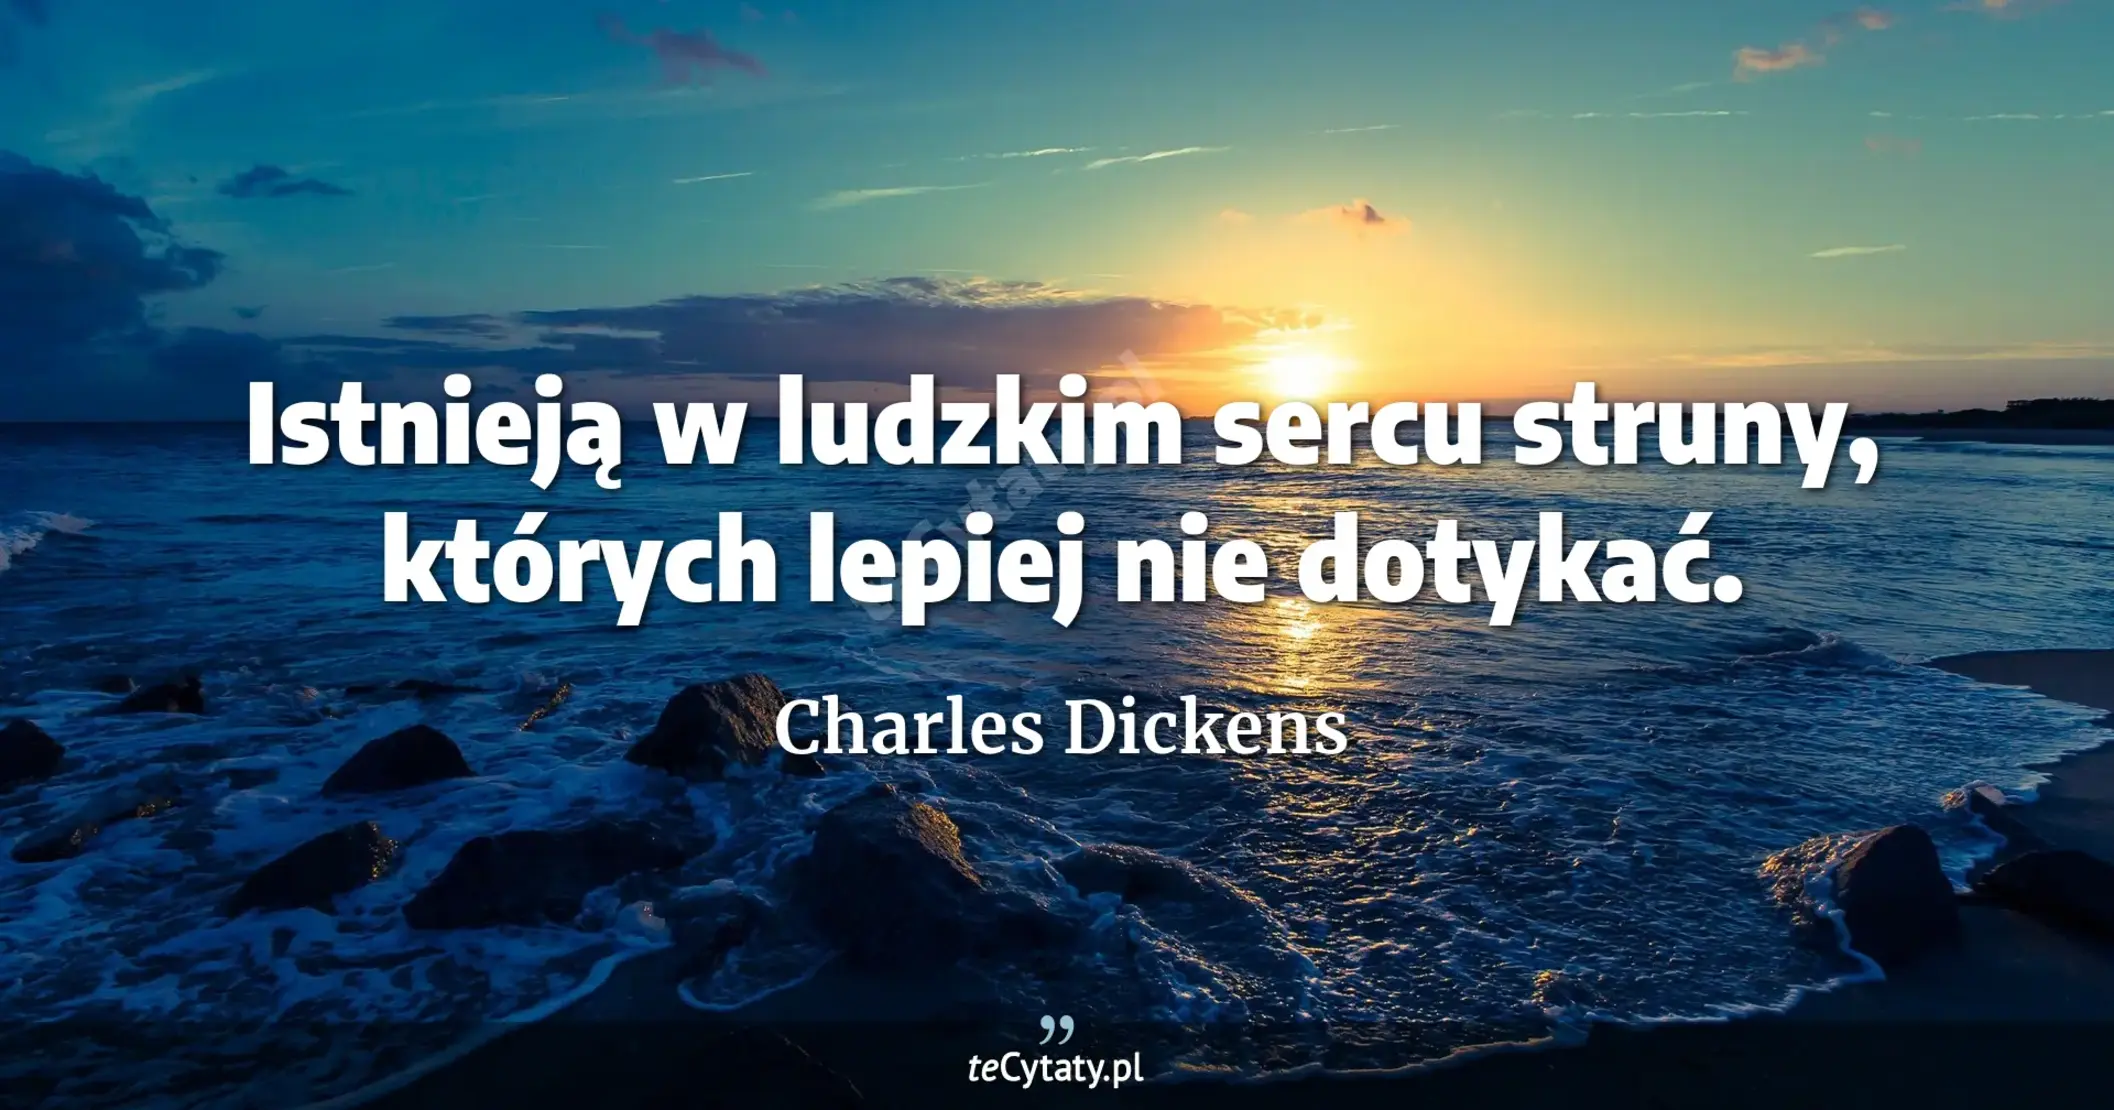 Istnieją w ludzkim sercu struny, których lepiej nie dotykać. - Charles Dickens